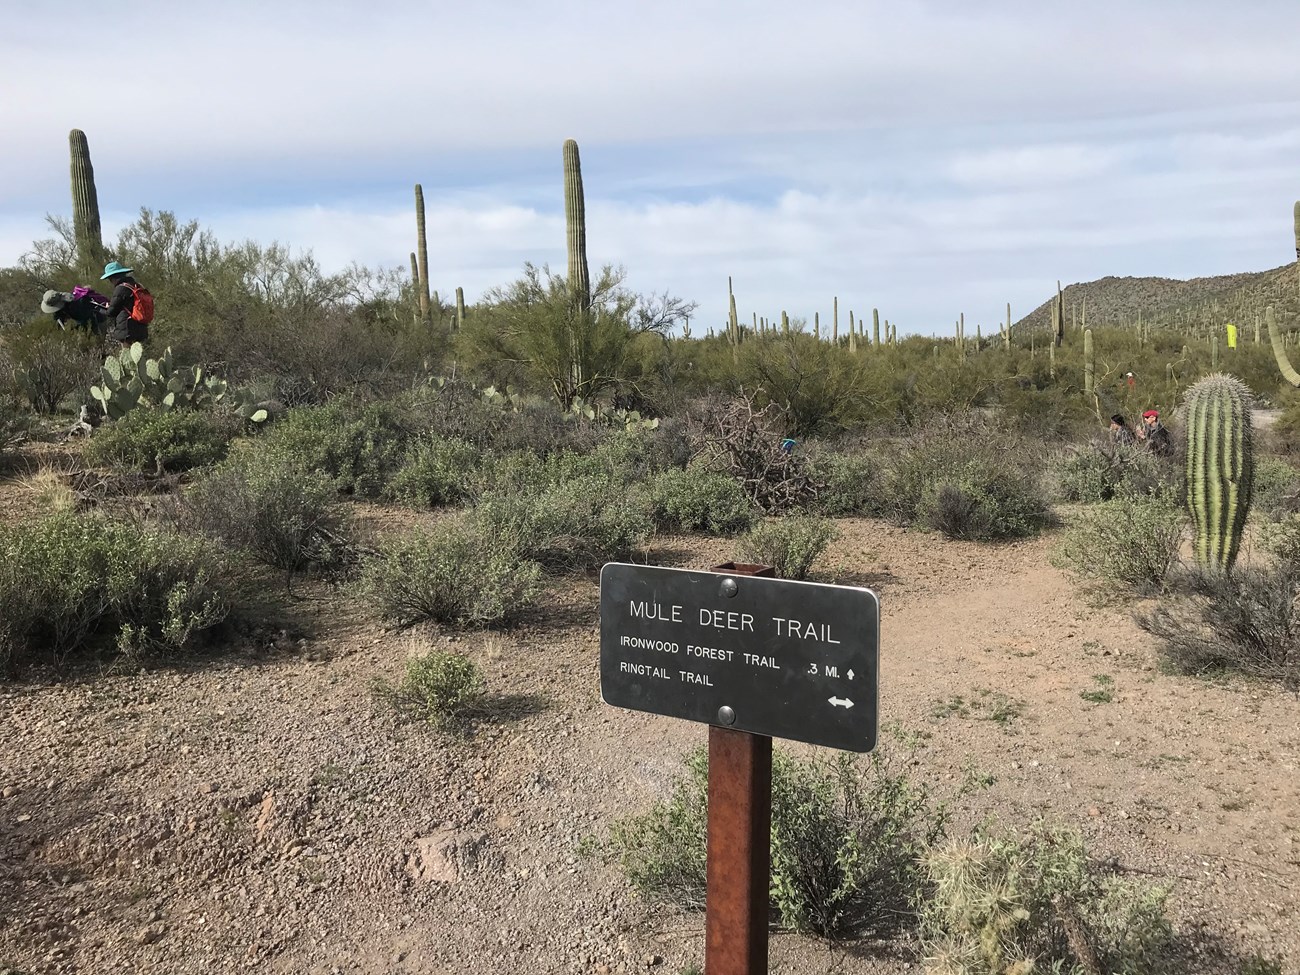 Volunteers work in desert landscape beyond Mule Deer Trail sign